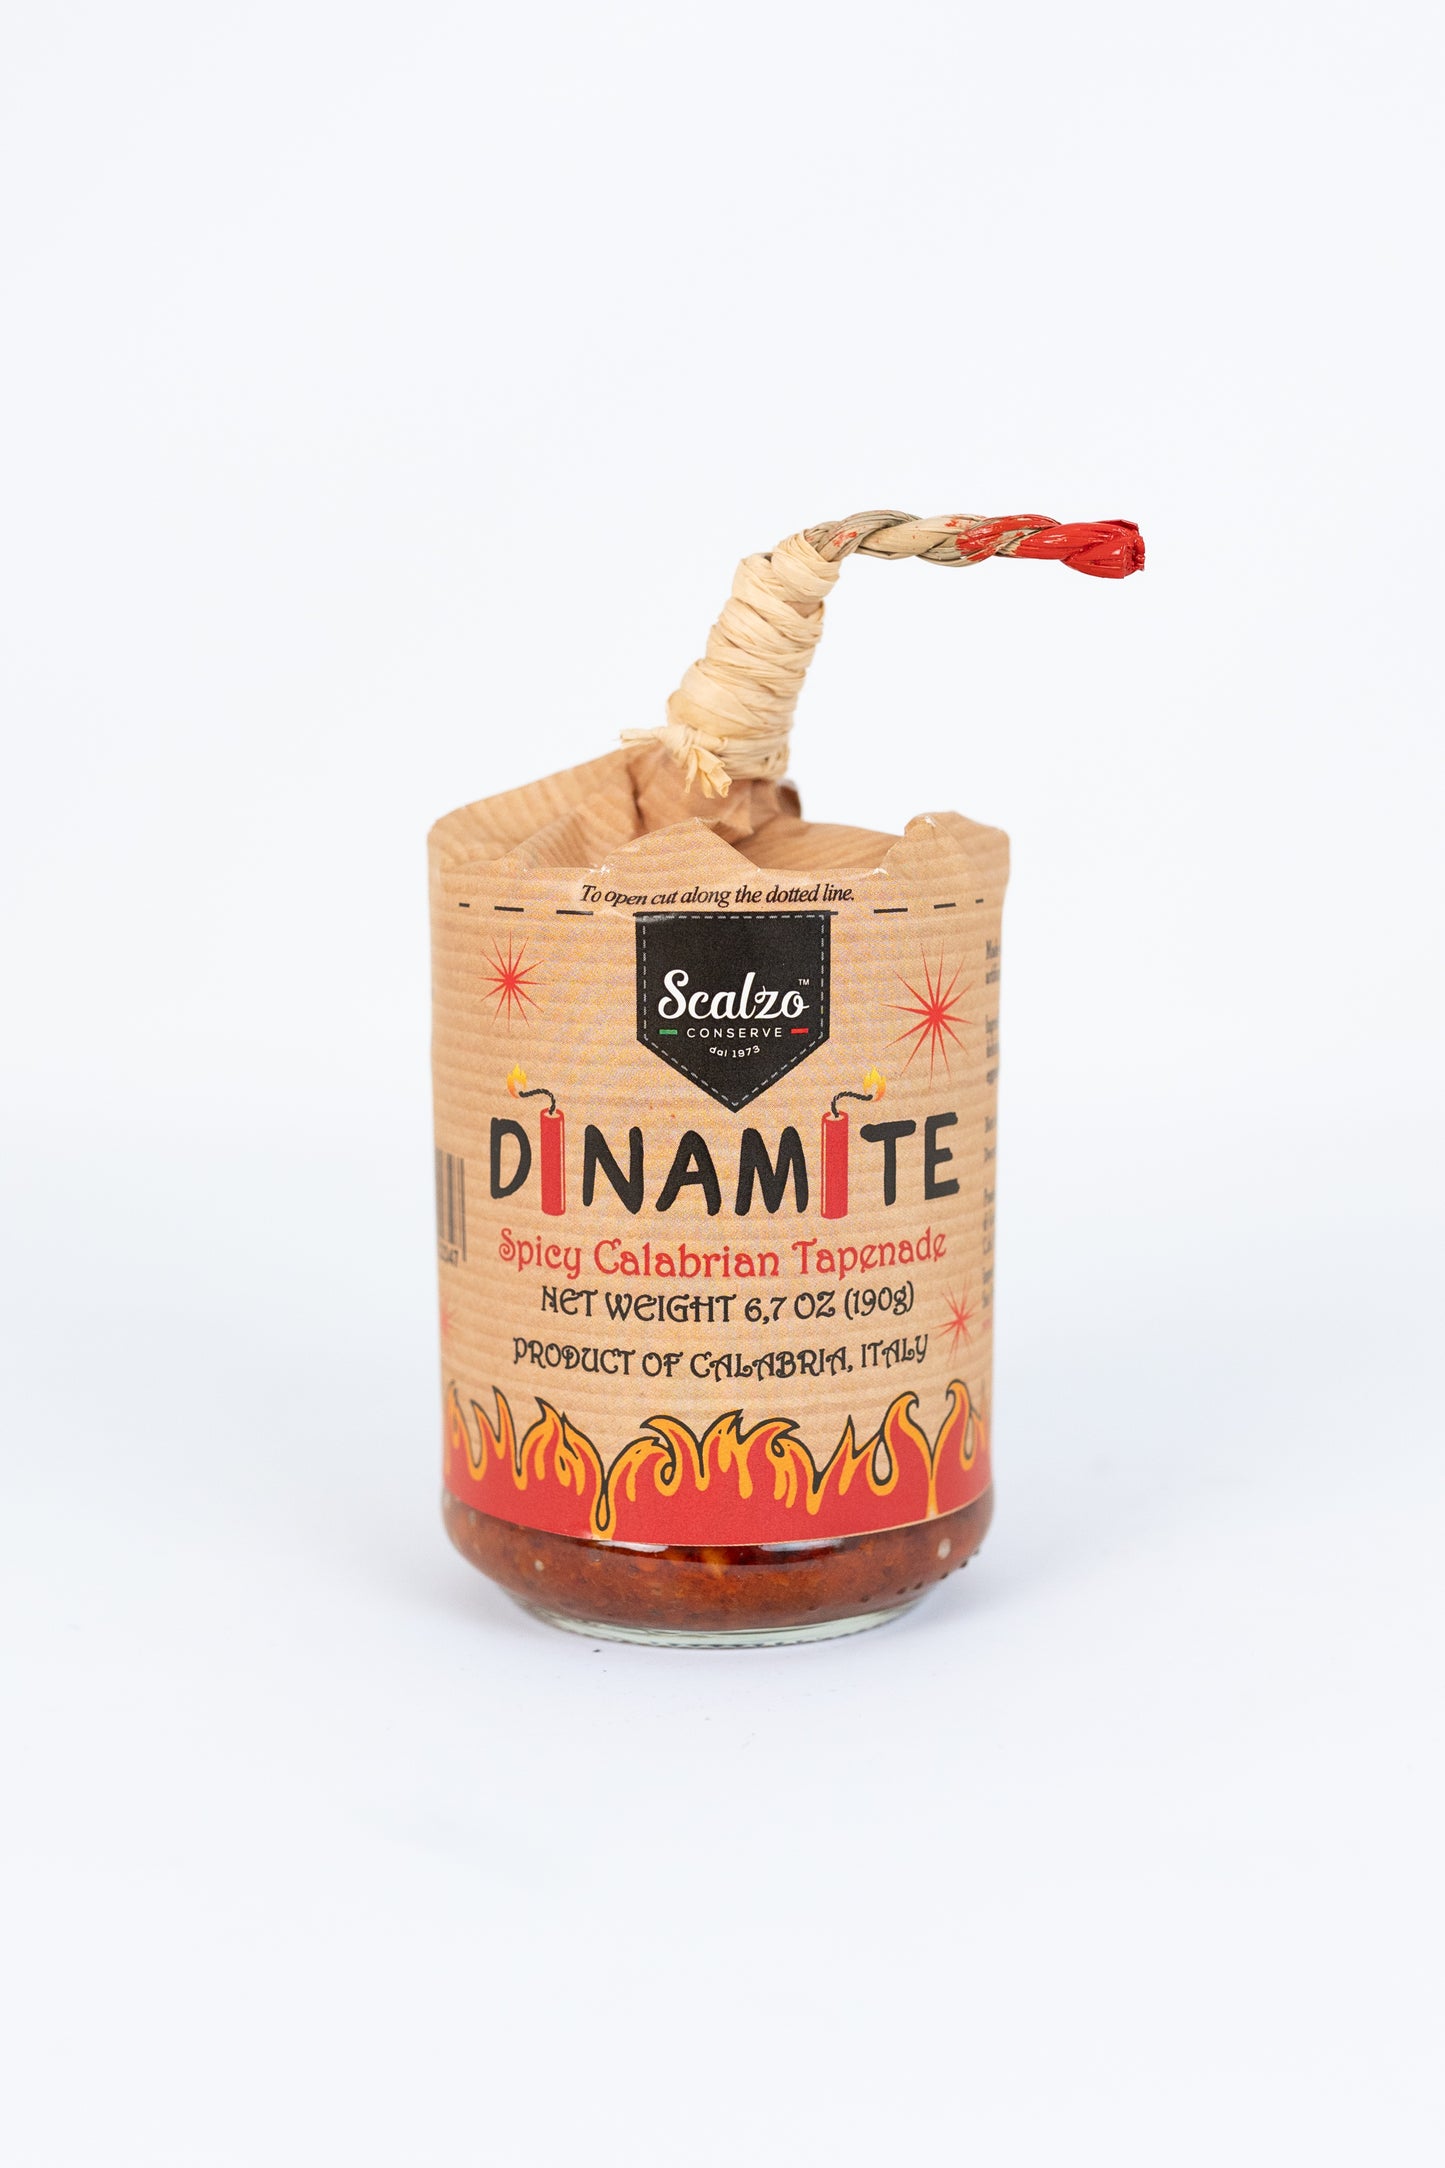 "Dinamite" Hot Pepper Tapenade - 6.7oz